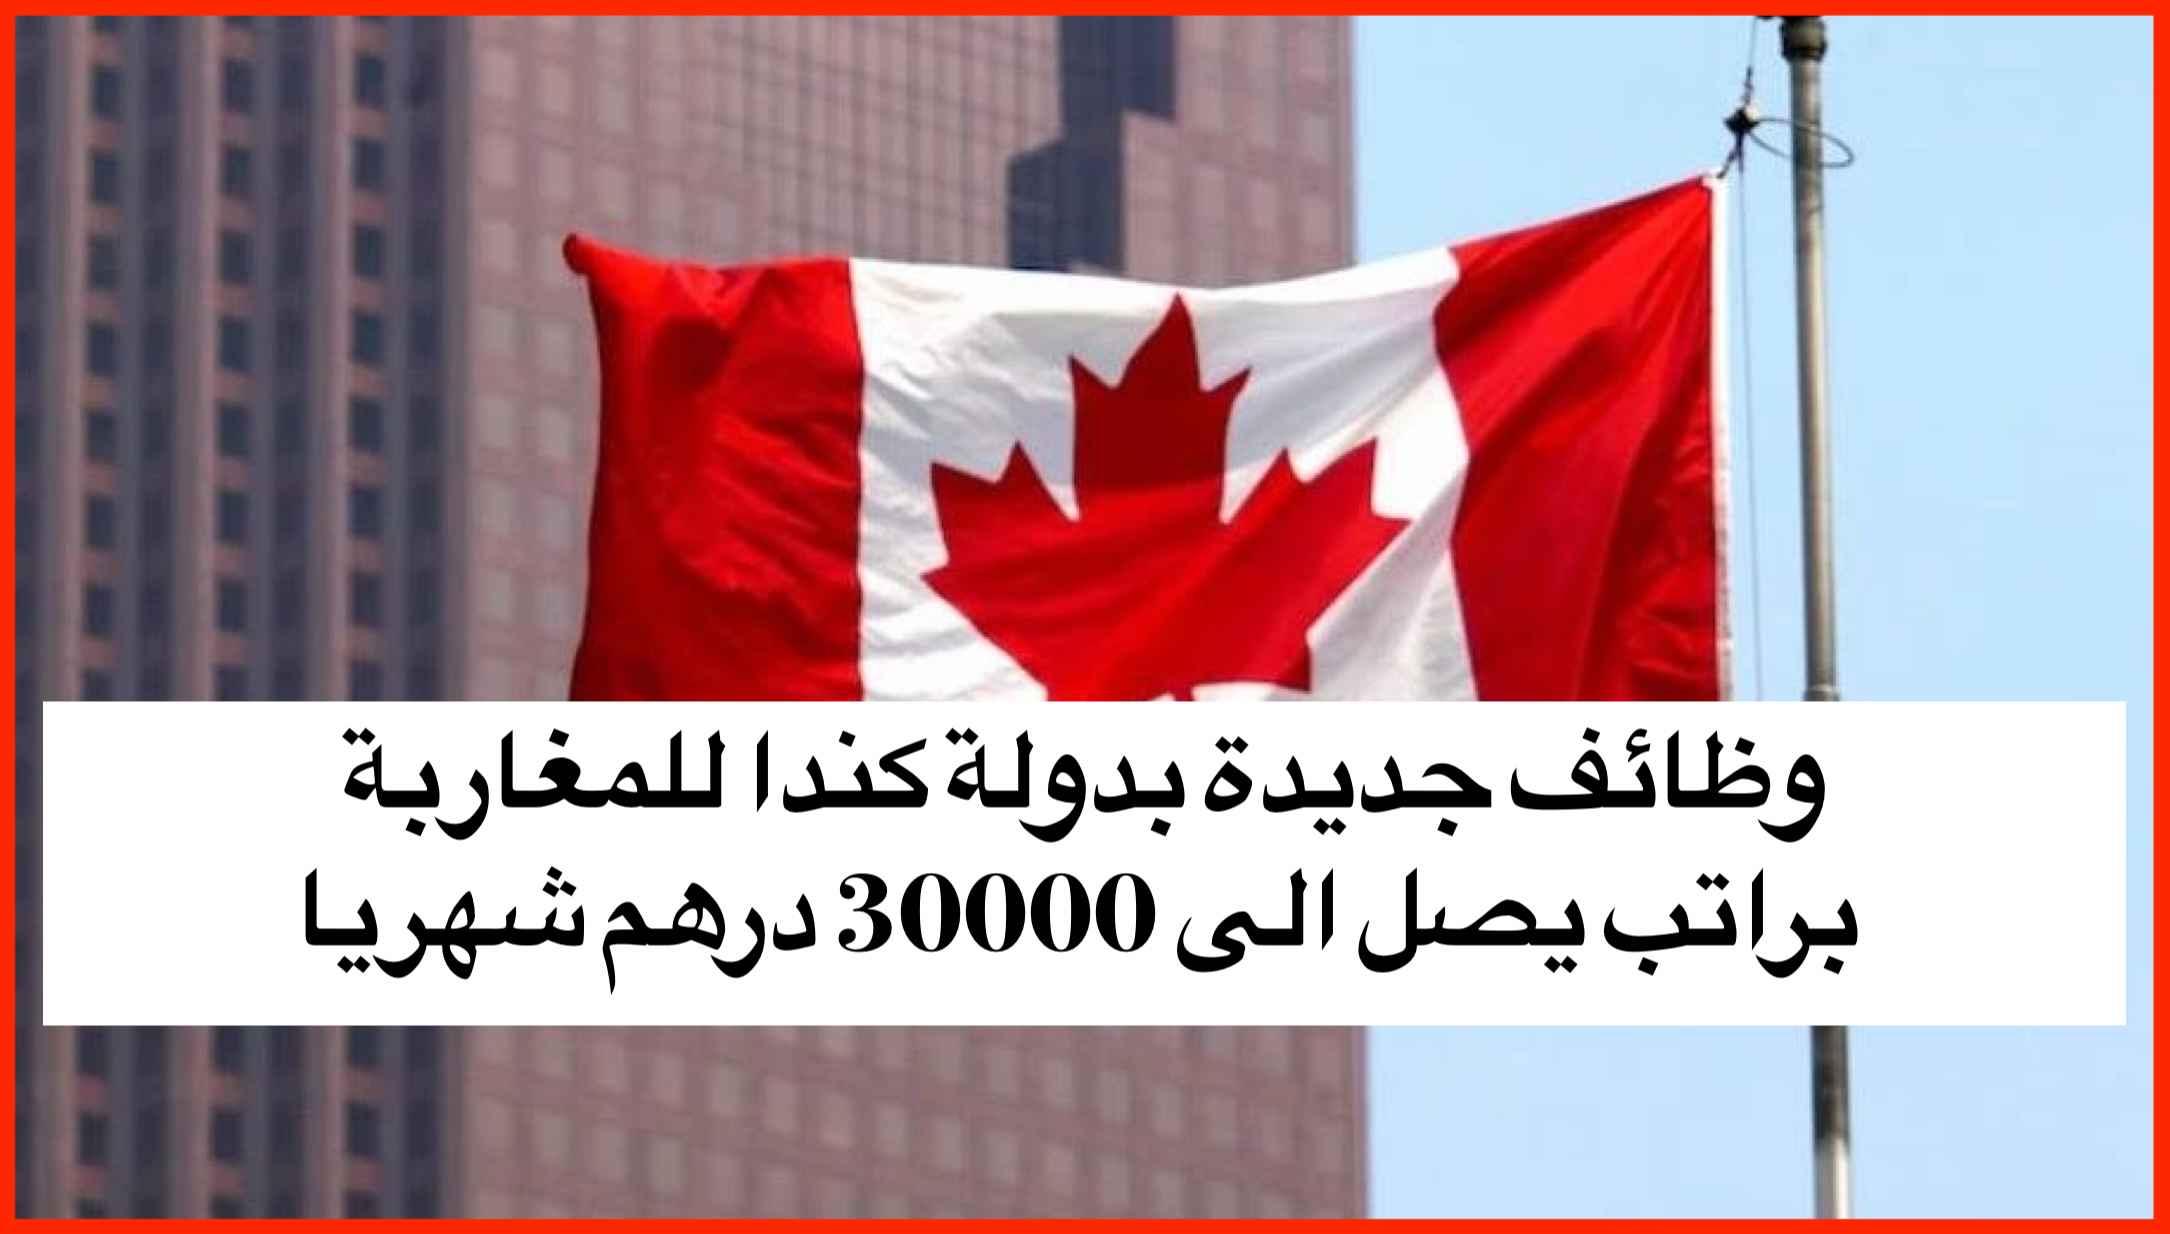 وظائف جديدة بدولة كندا للمغاربة براتب يصل الى 30000 درهم شهريا